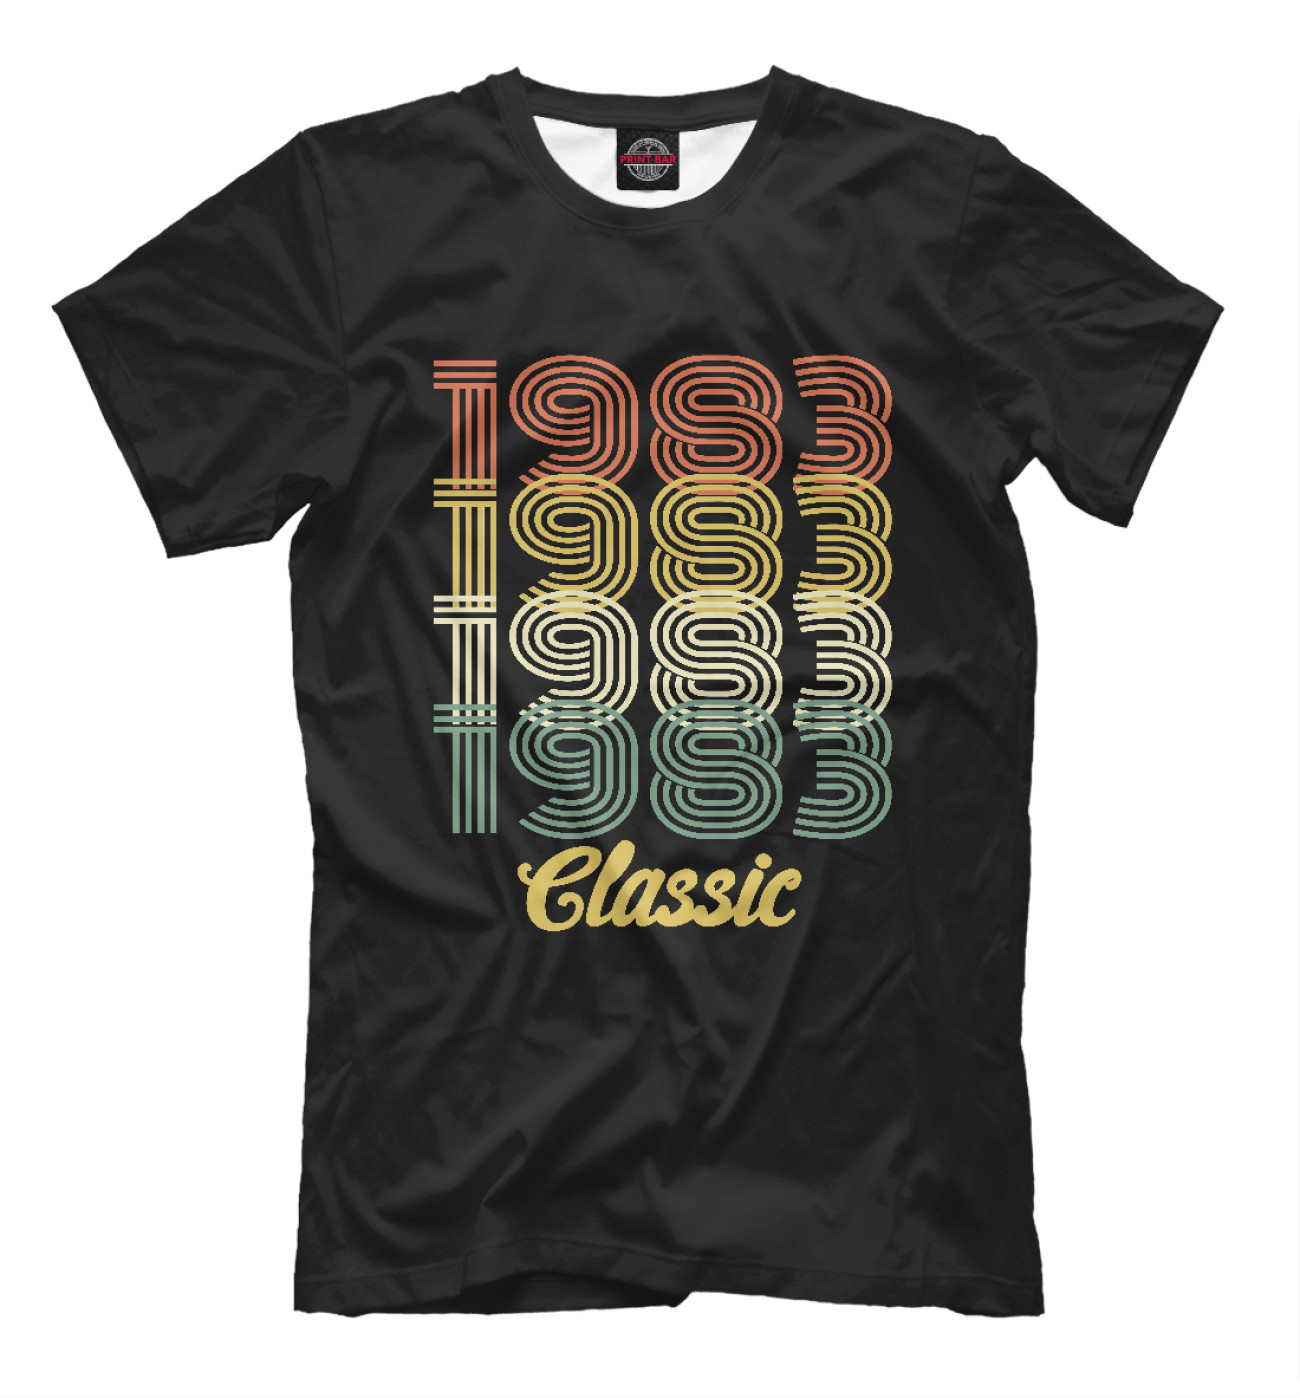 Мужская Футболка 1983 Classic, артикул: DVT-137787-fut-2